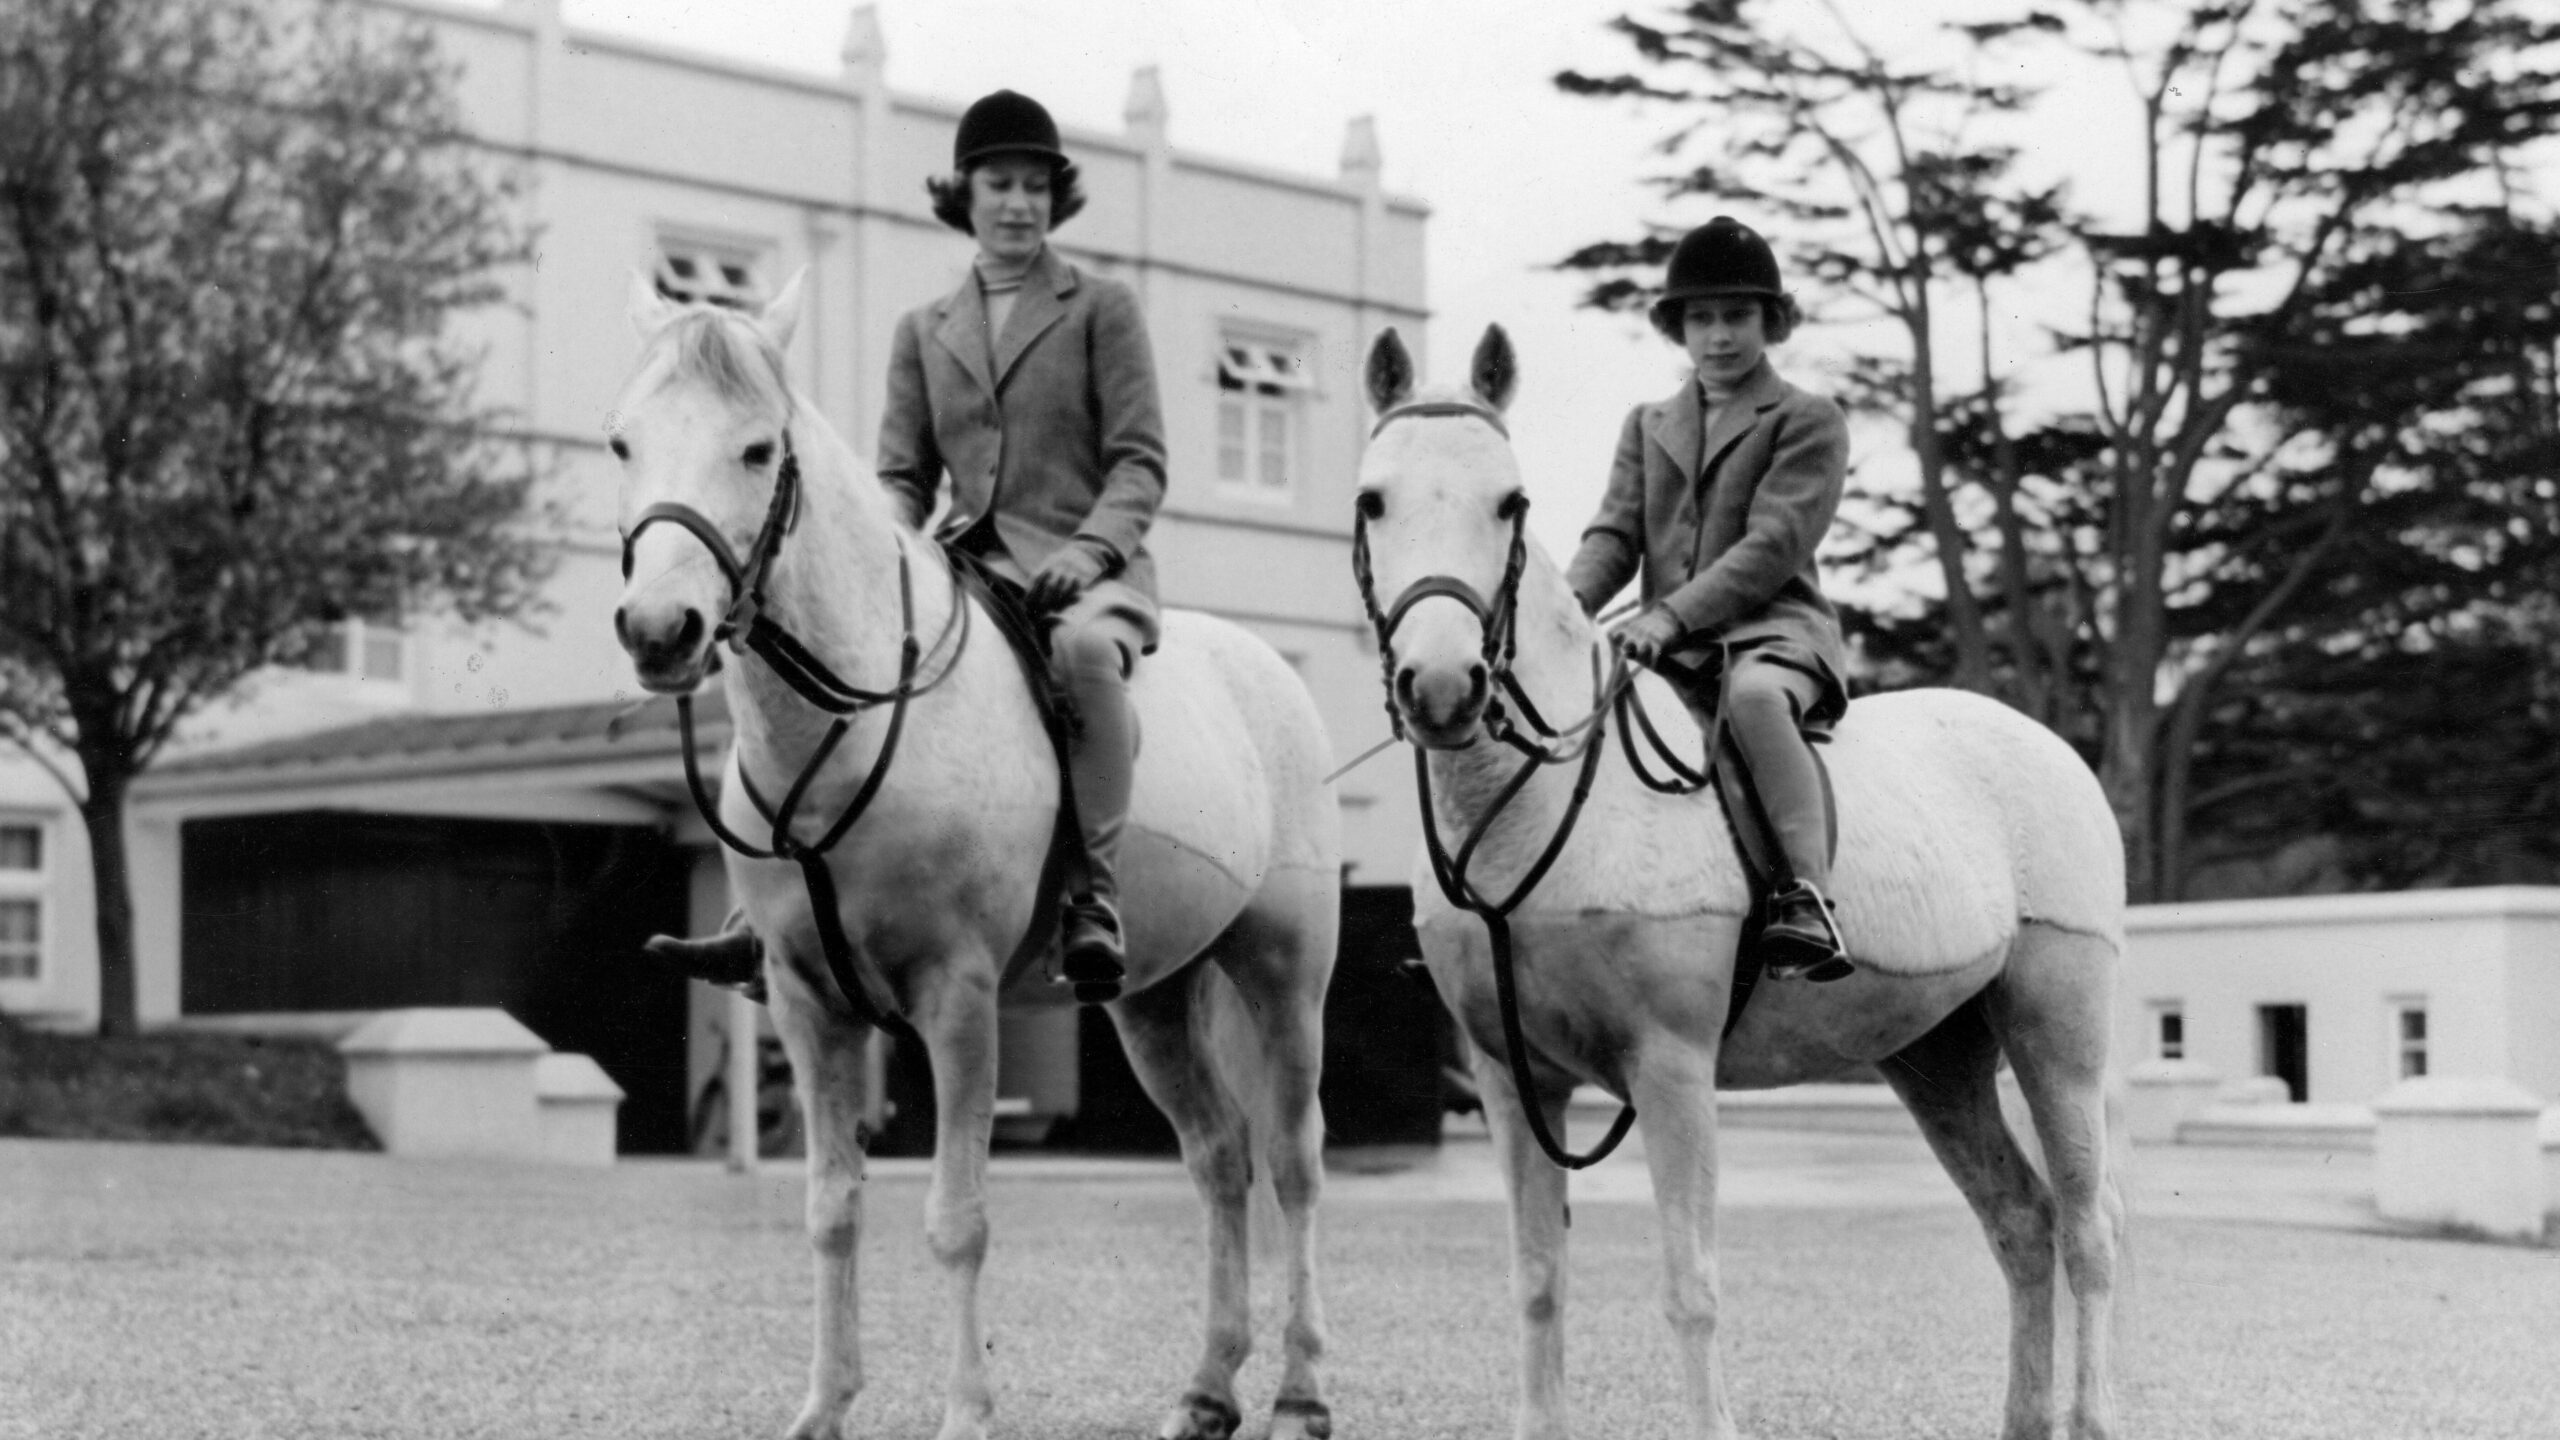 Princess Elizabeth (Queen Elizabeth II) and Margaret on horseback in the ground of Royal Lodge, Windsor c. 1940.